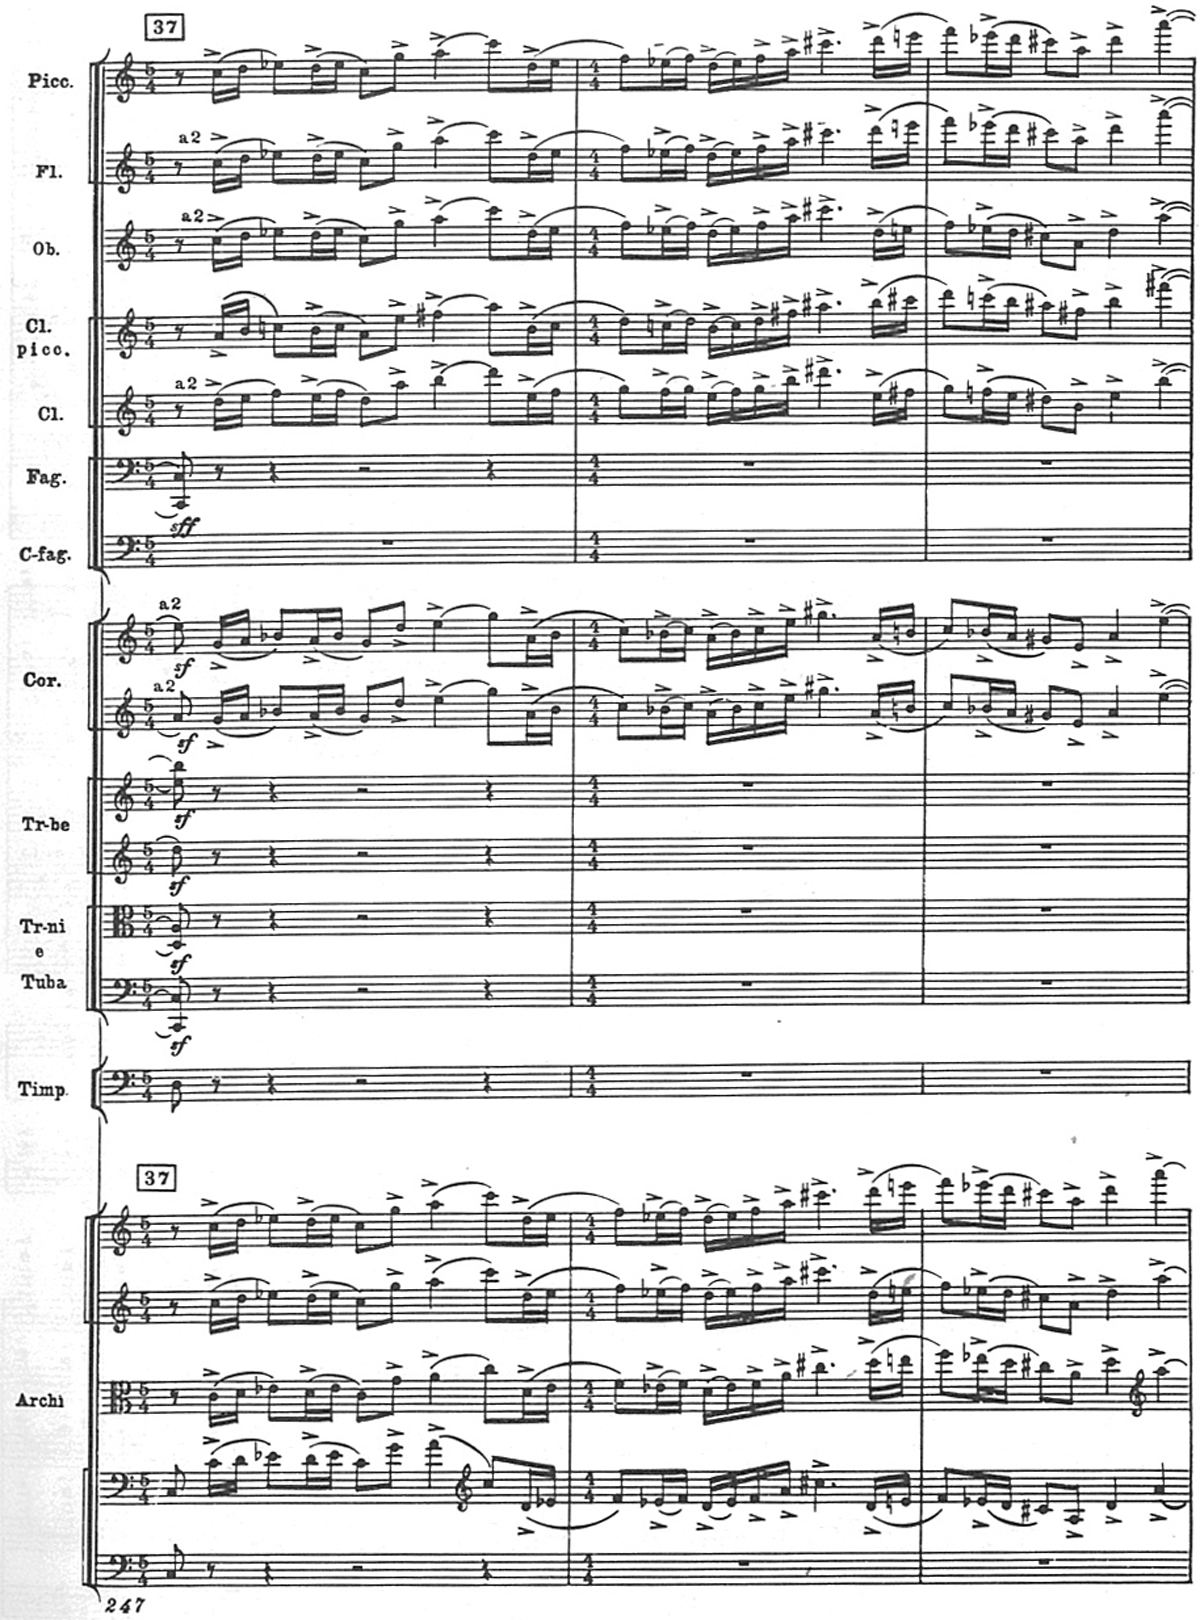 Shostakovich 5 symphony score